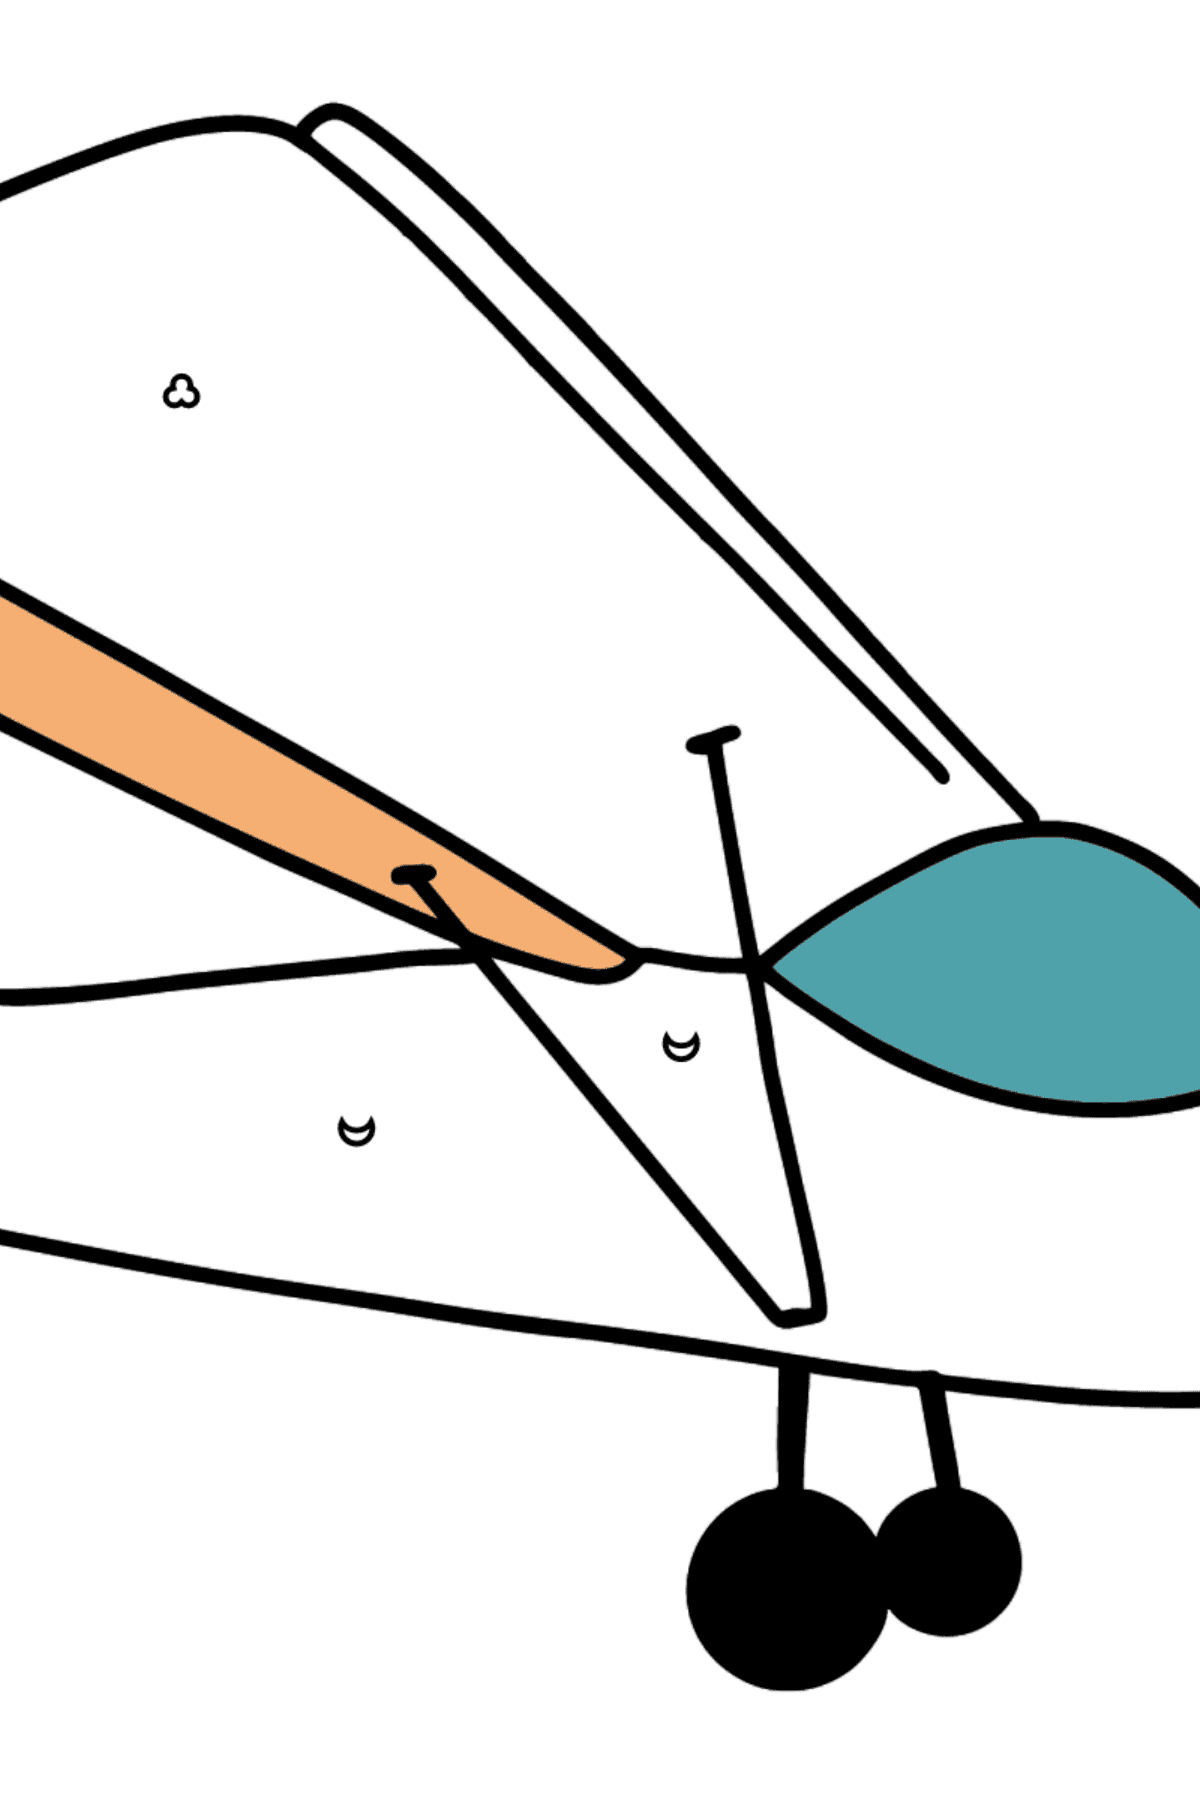 Kolorowanka Mały samolot - Kolorowanie według figur geometrycznych dla dzieci